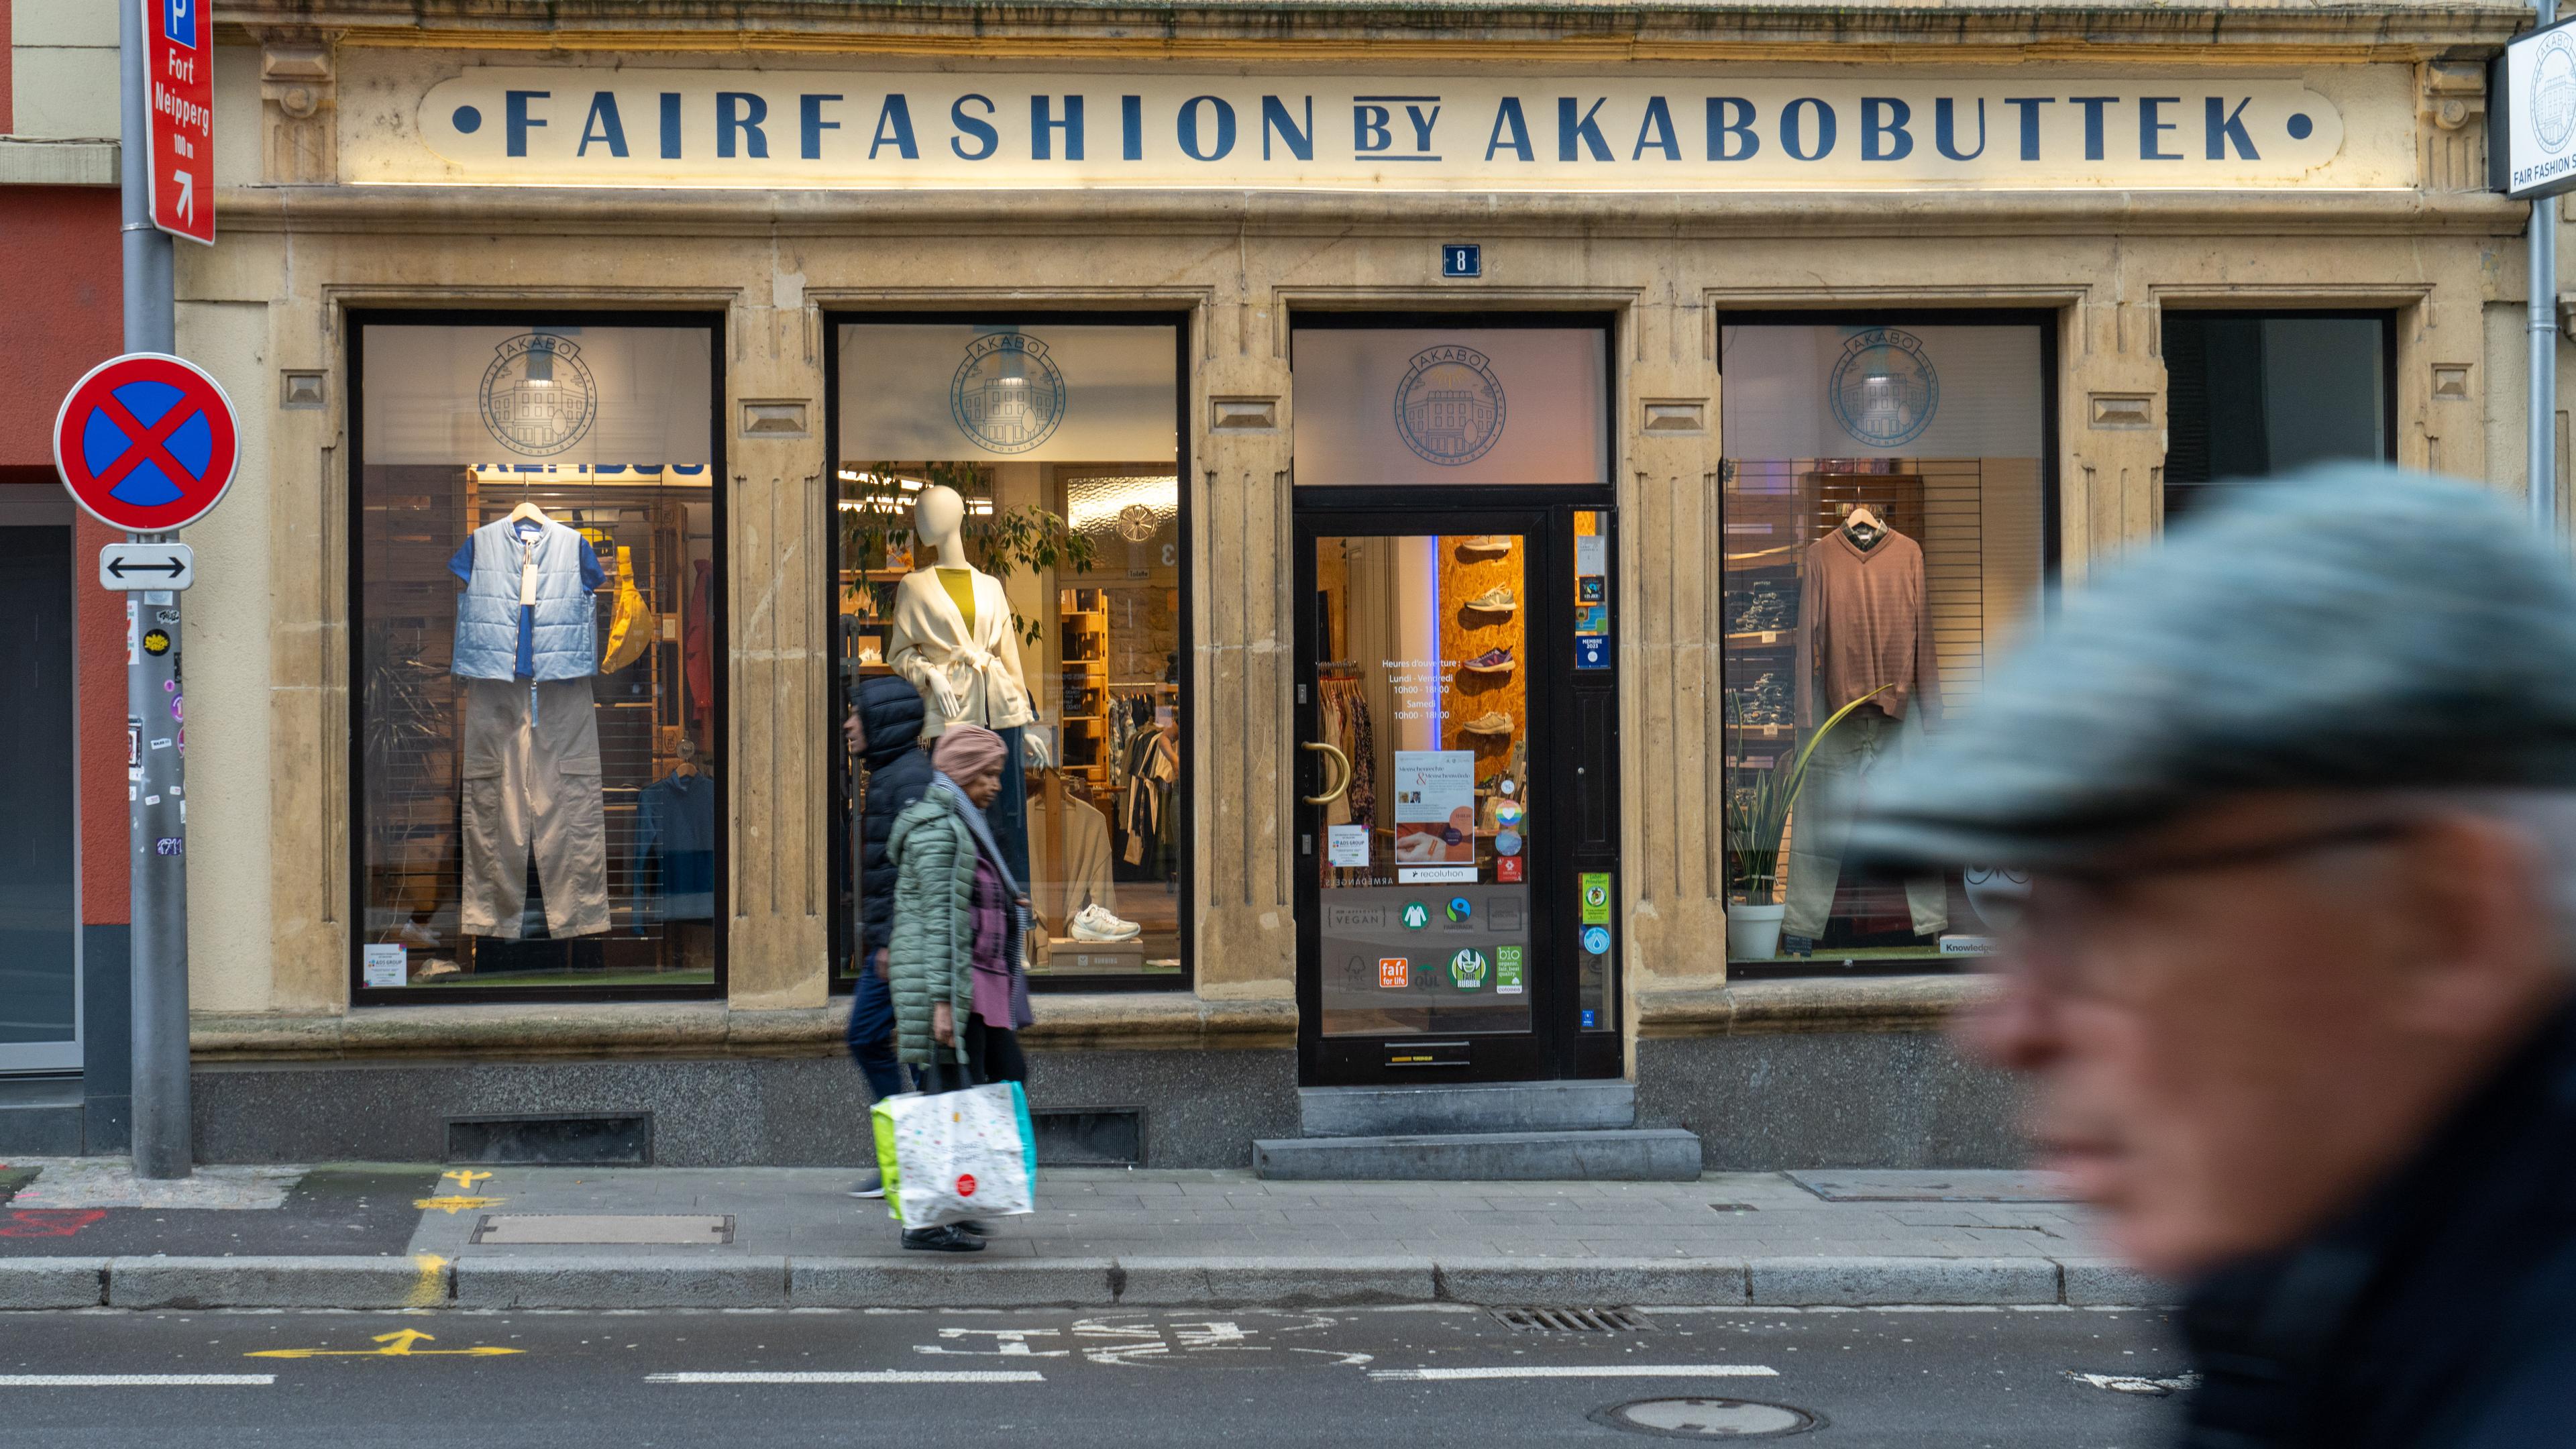 L'Akabobuttek était le premier magasin de mode équitable au Luxembourg.